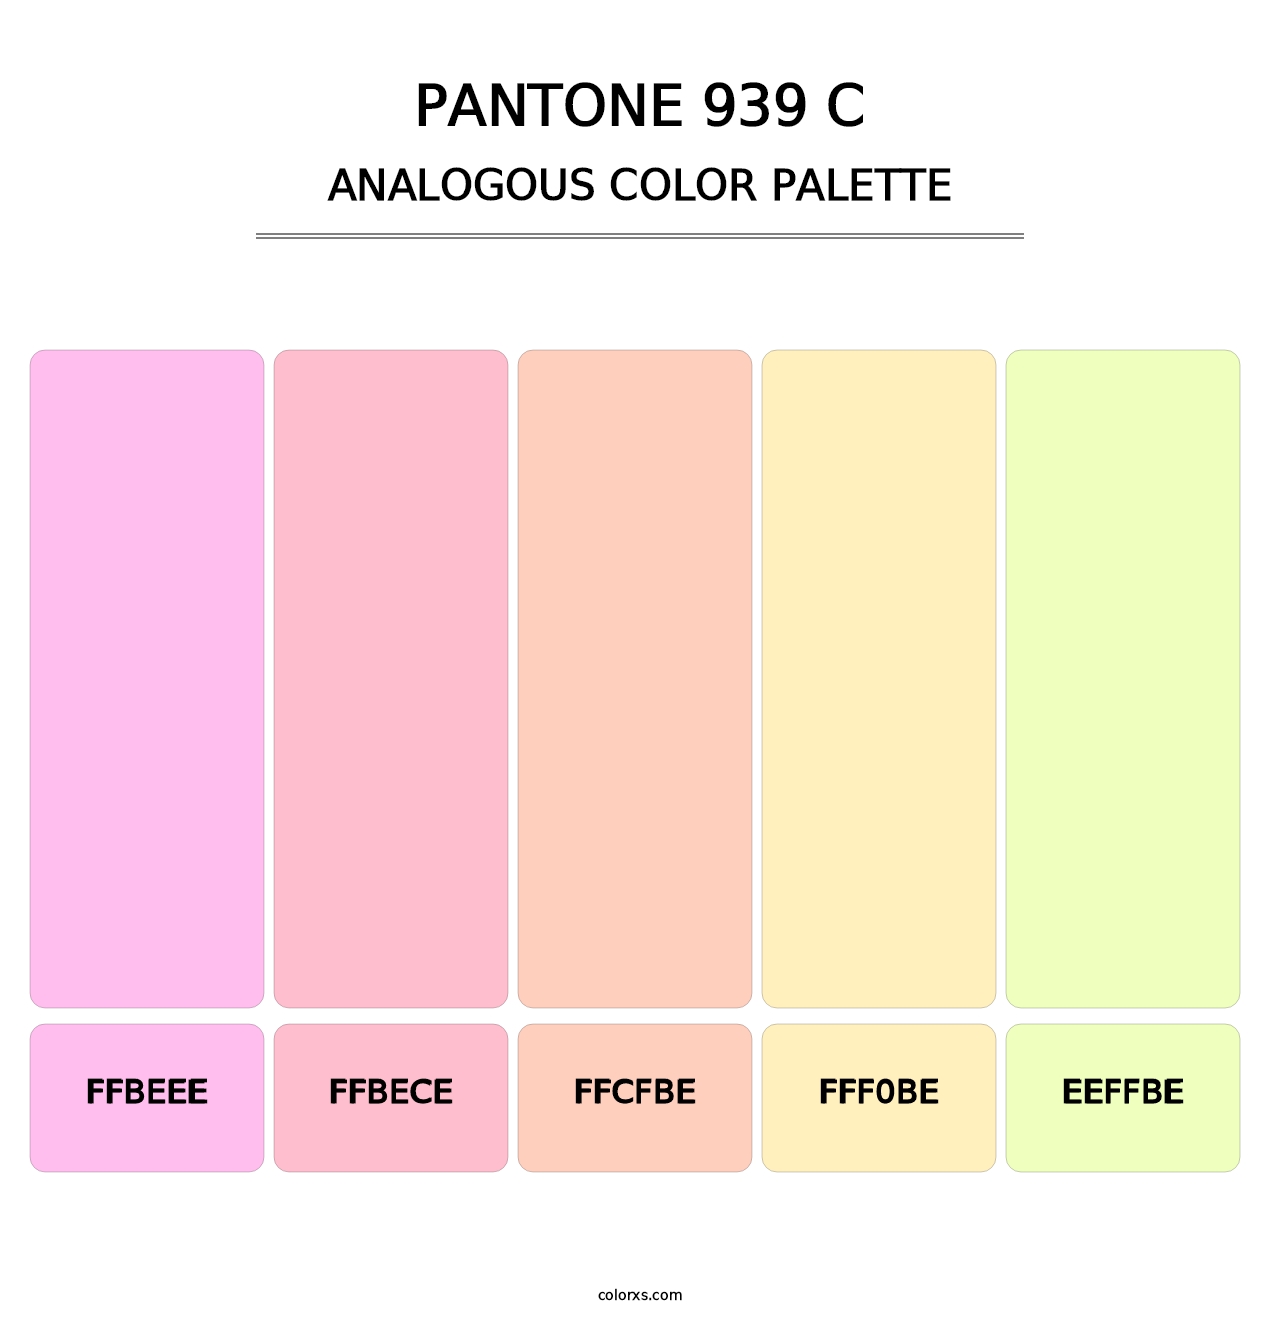 PANTONE 939 C - Analogous Color Palette